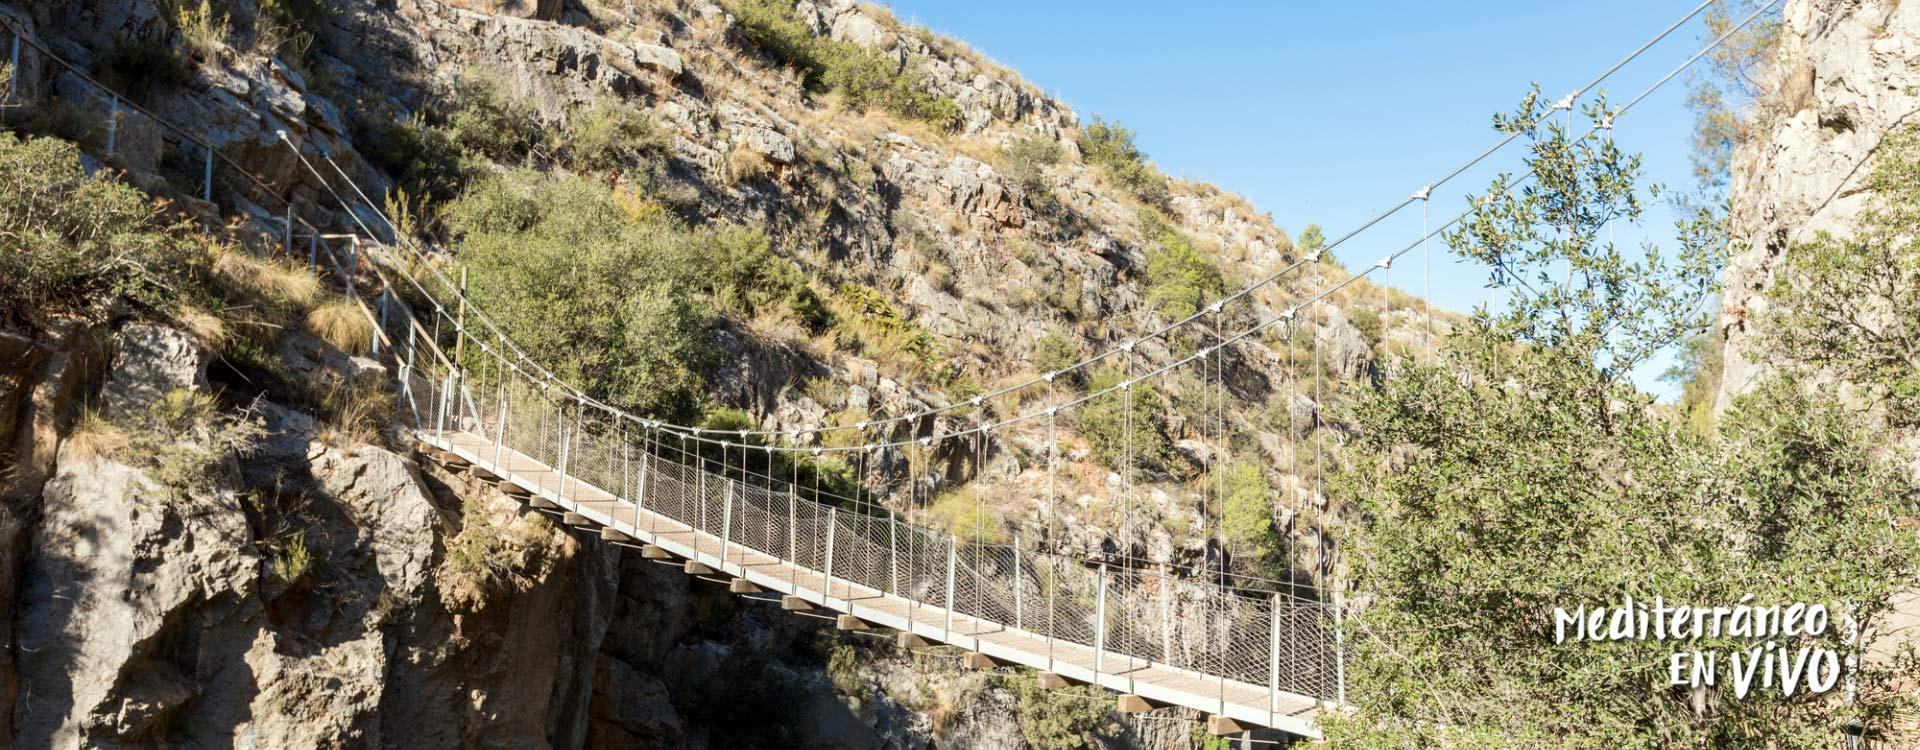 Puente penjant en un entorn verd a la Comunitat Valenciana